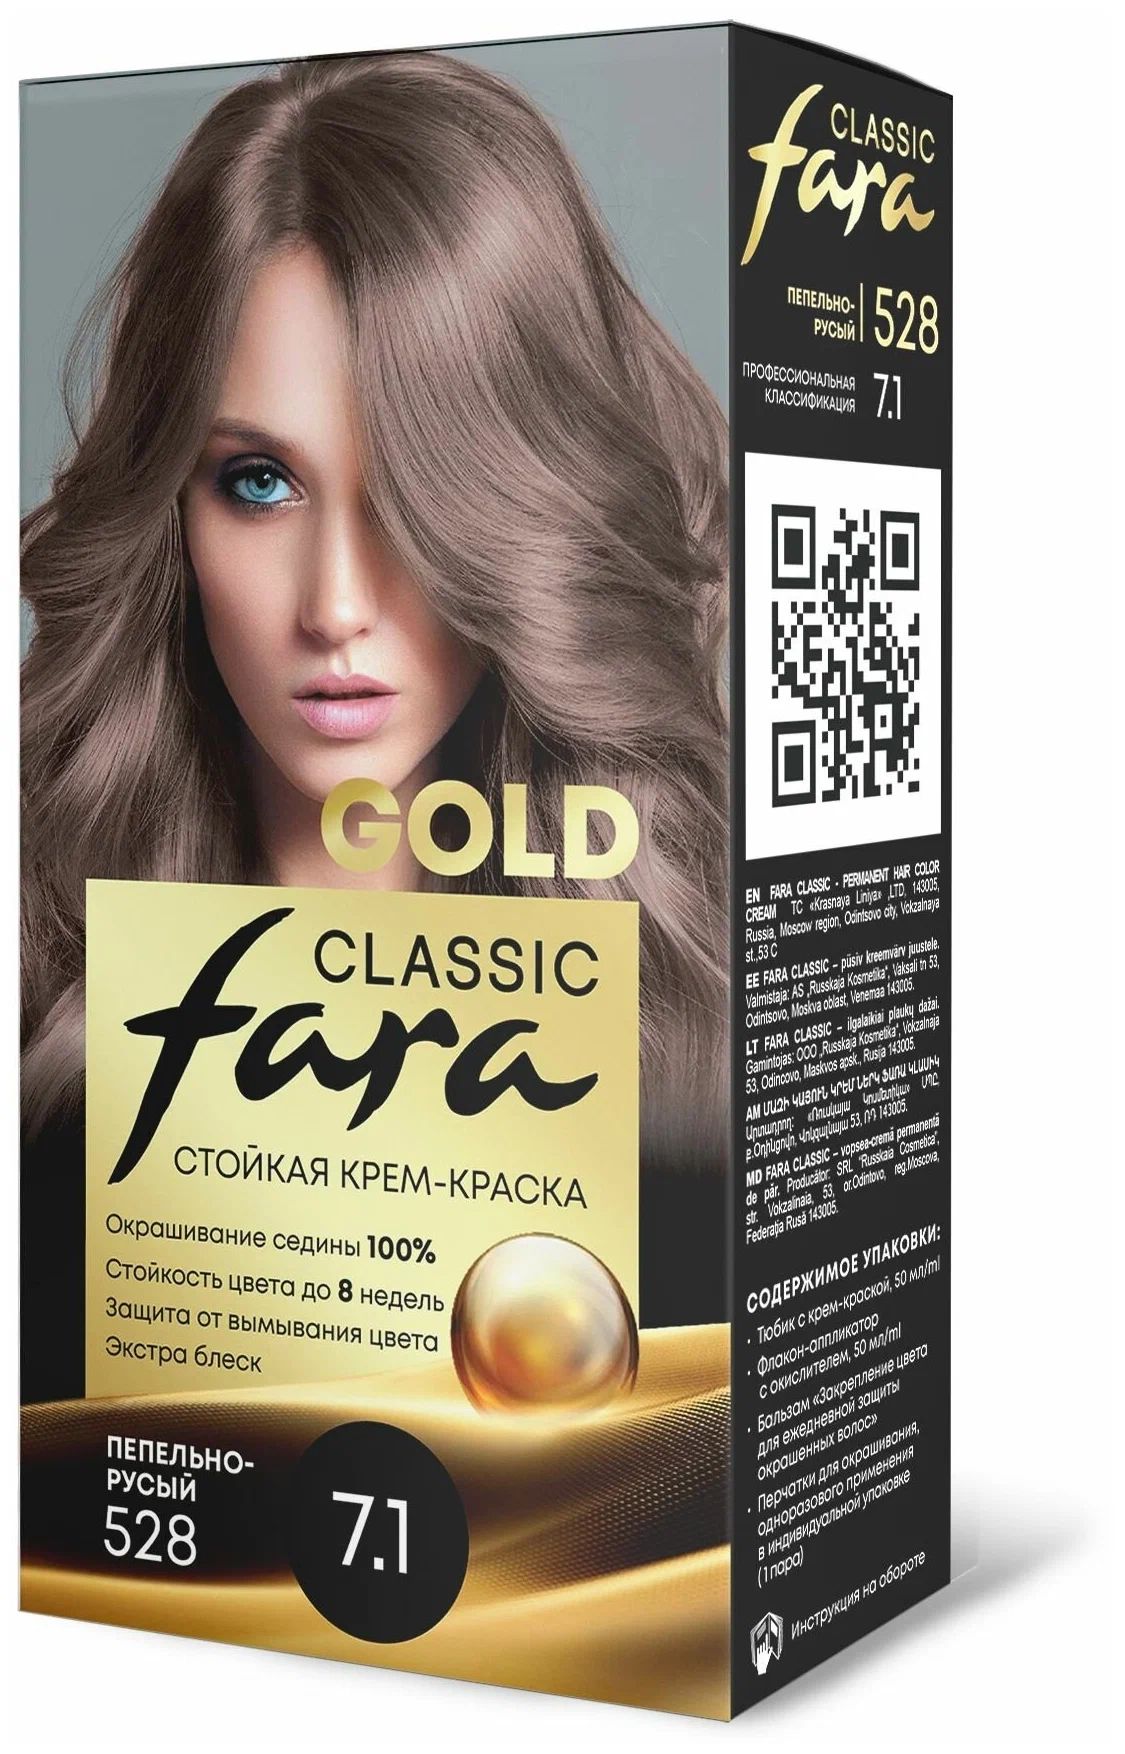 Крем-краска для волос Fara Classic Gold 528 пепельно-русый 7.1, 140 г русская голгофа политические репрессии в югре